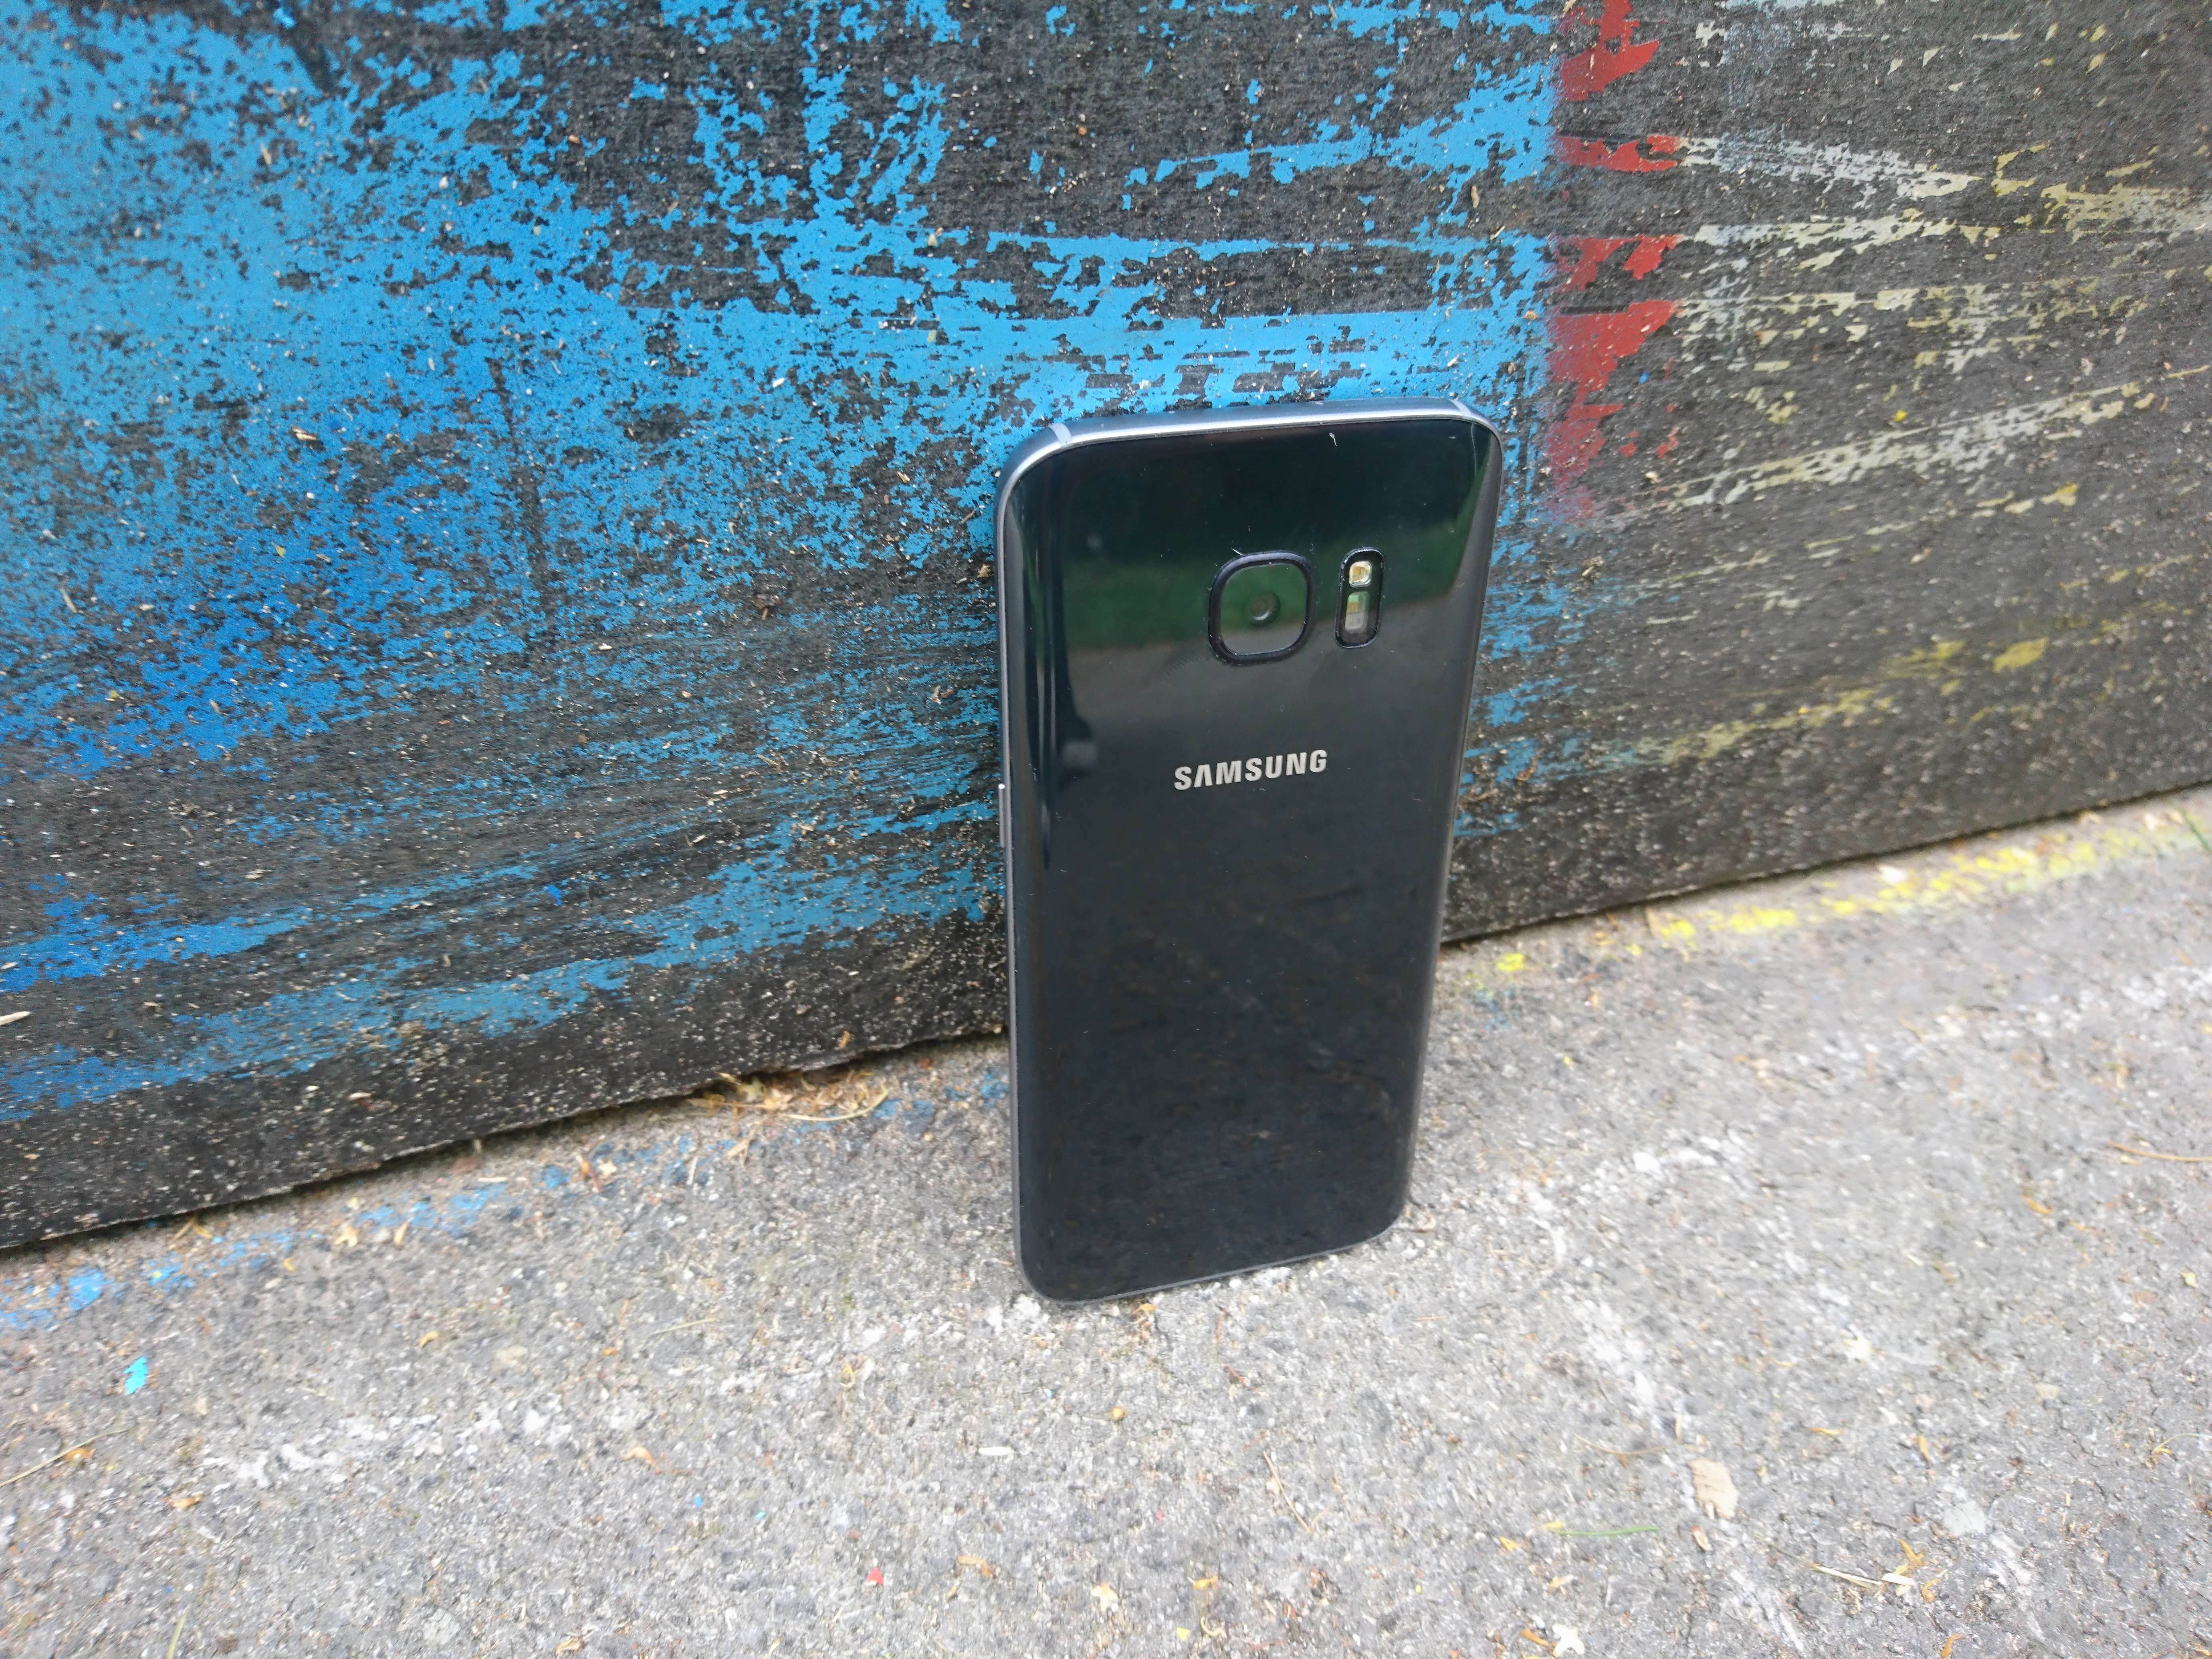 Samsung Galaxy S7 - test i recenzja urządzenia recenzje, polecane zalety, Wideo, wady, test i recenzja Samsung Galaxy S7, Samsung Galaxy S7, recka, recenzja Samsung Galaxy S7, Recenzja, polska recenzja Samsung Galaxy S7, galaxy s7, cena, aparat  Pamiętam, jak oglądałem na żywo premierę Galaxy S7/S7 Edge i częściowo byłem zachwycony nowym produktem lidera rynku mobilnego, ale najbardziej zdenerwował mnie fakt, że nie poczyniono drastycznych zmian we wzornictwie urządzenia. DSC 0015